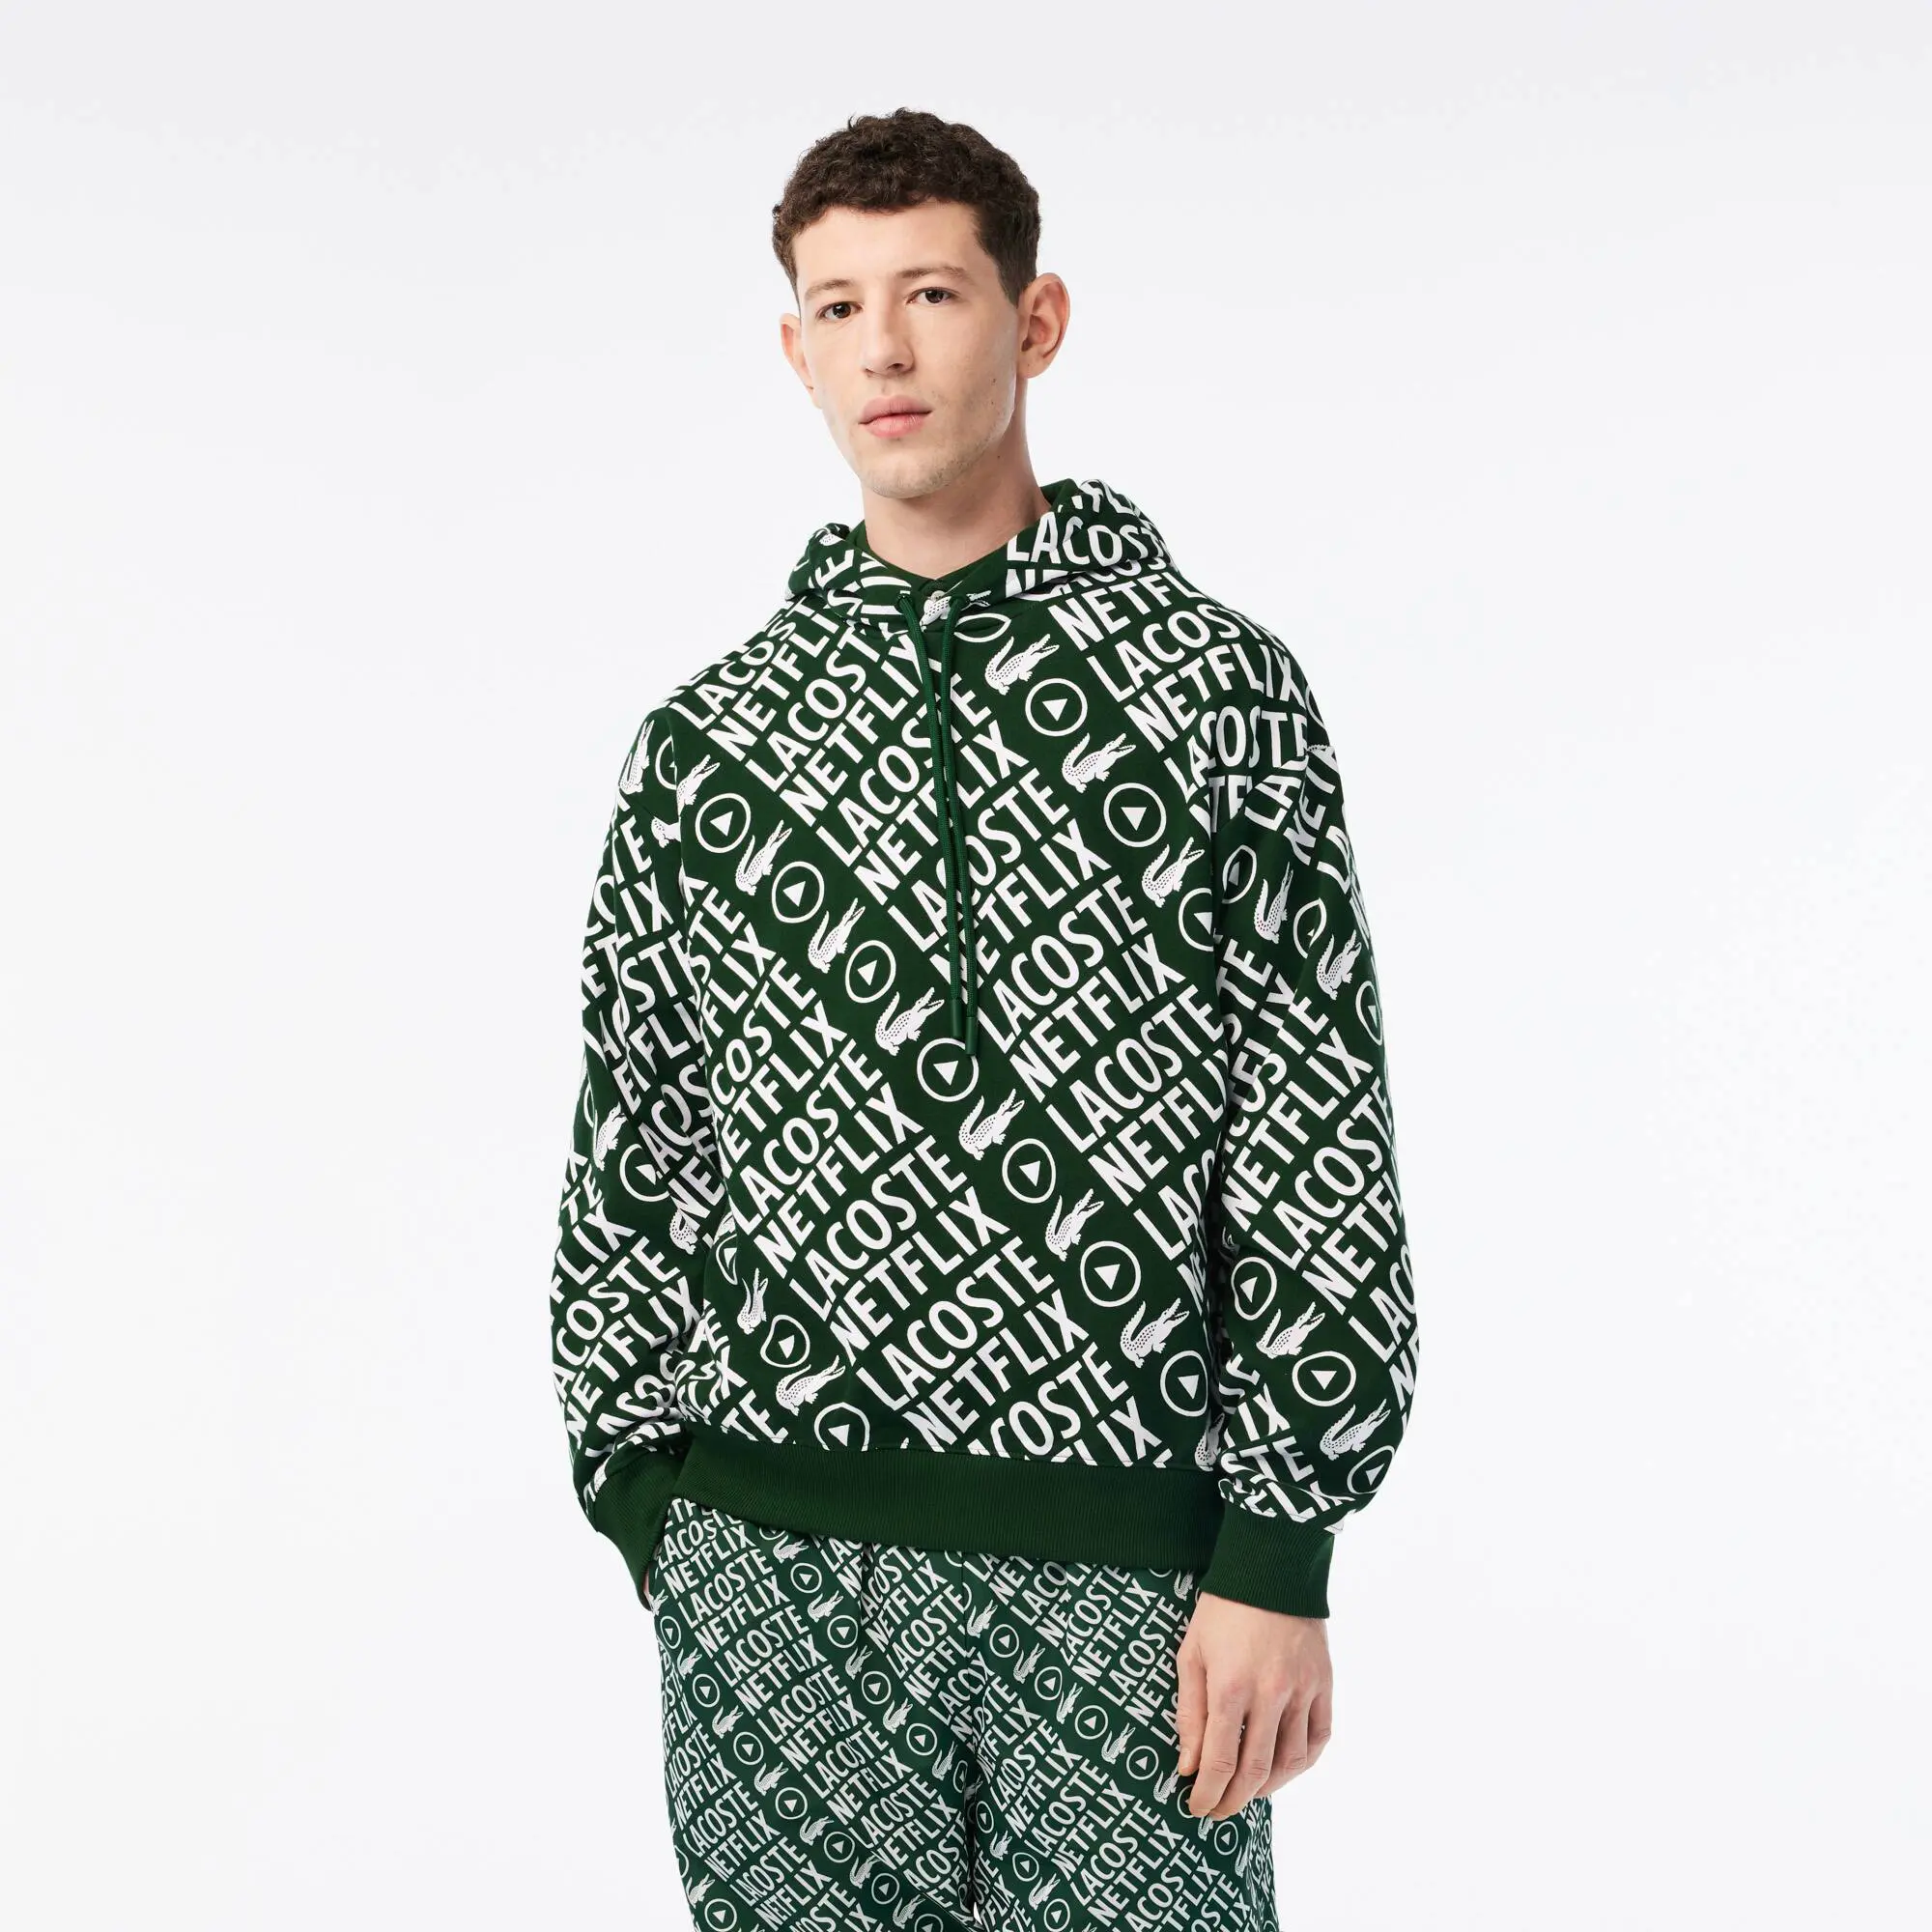 Lacoste Sweatshirt de algodão orgânico loose fit Lacoste x Netflix para homem. 1